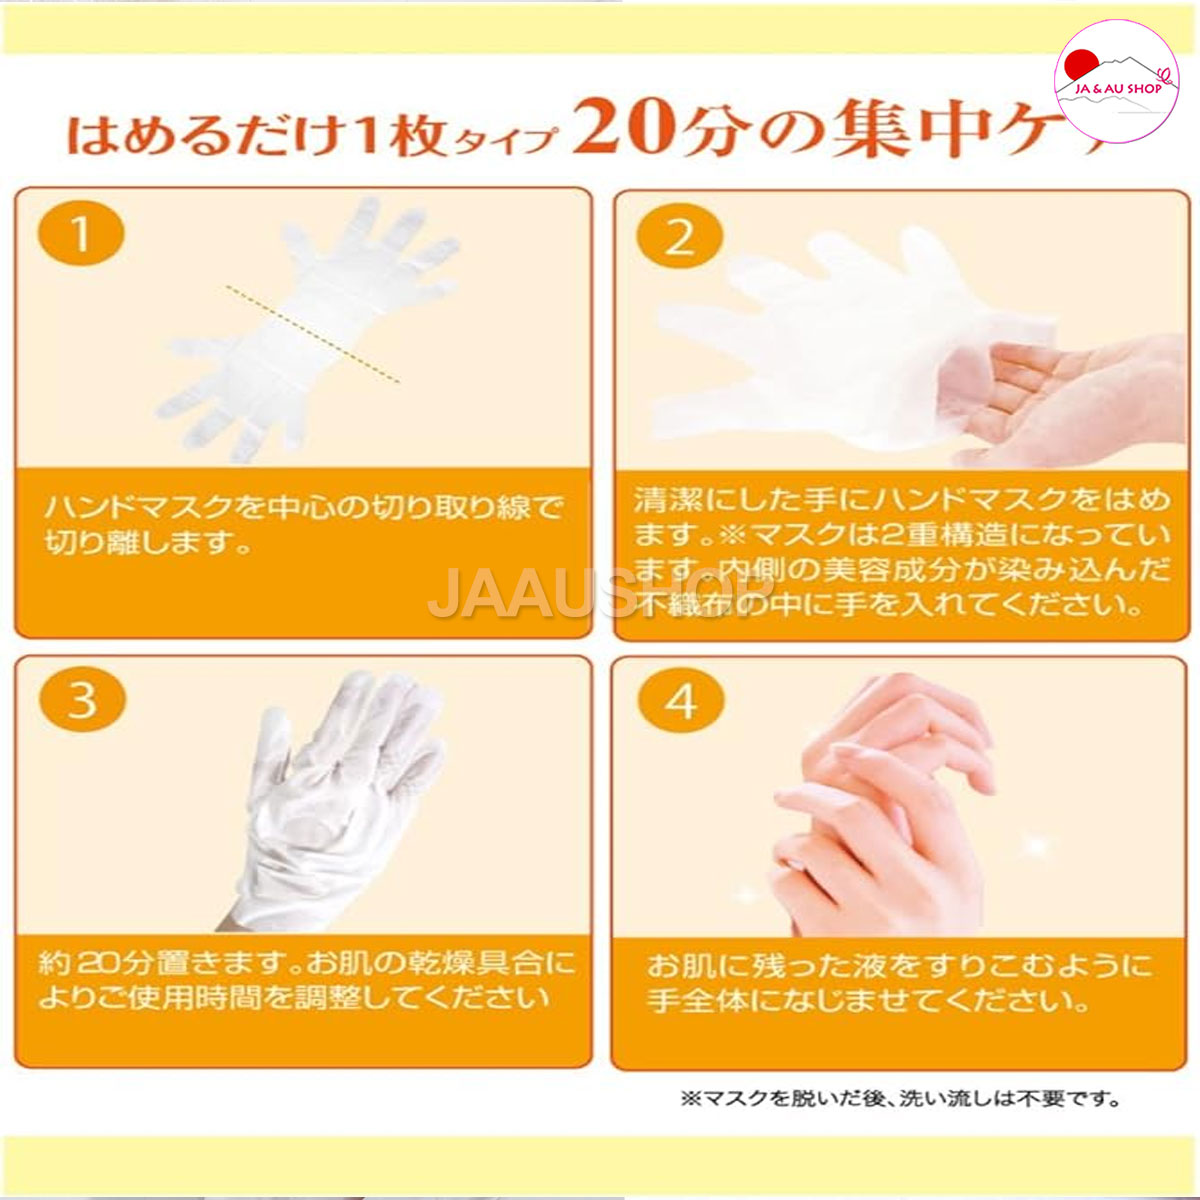 Hướng dẫn sử dụng Mặt nạ ủ tay Handmask Beauty World Nhật Bản